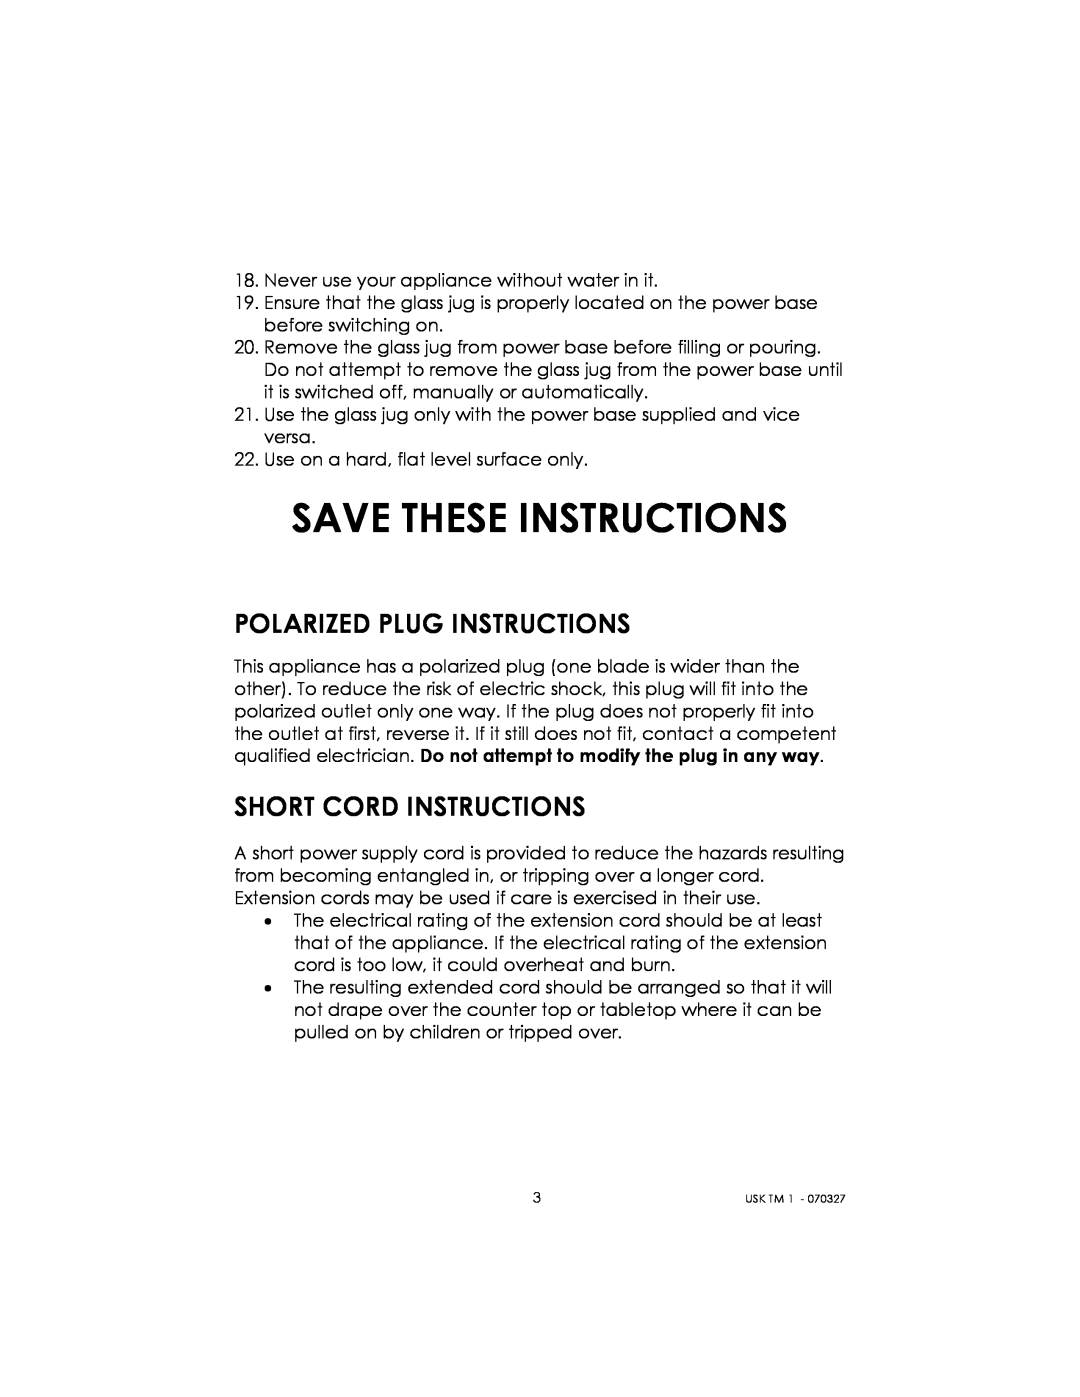 Kalorik usktm1 manual Save These Instructions, Polarized Plug Instructions, Short Cord Instructions 